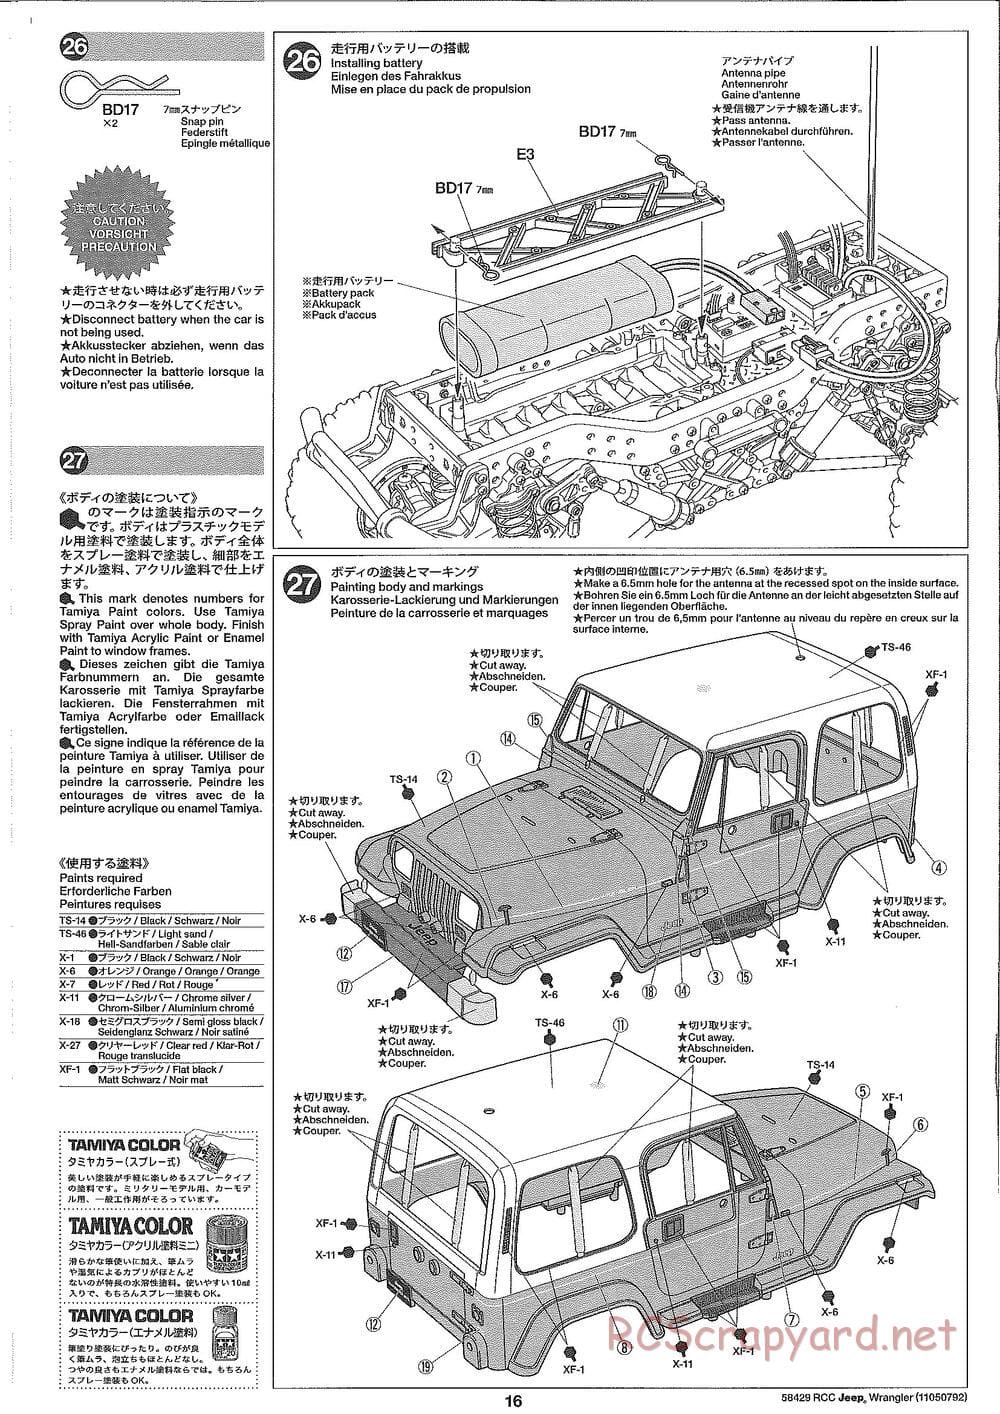 Tamiya - Jeep Wrangler - CR-01 Chassis - Manual - Page 16